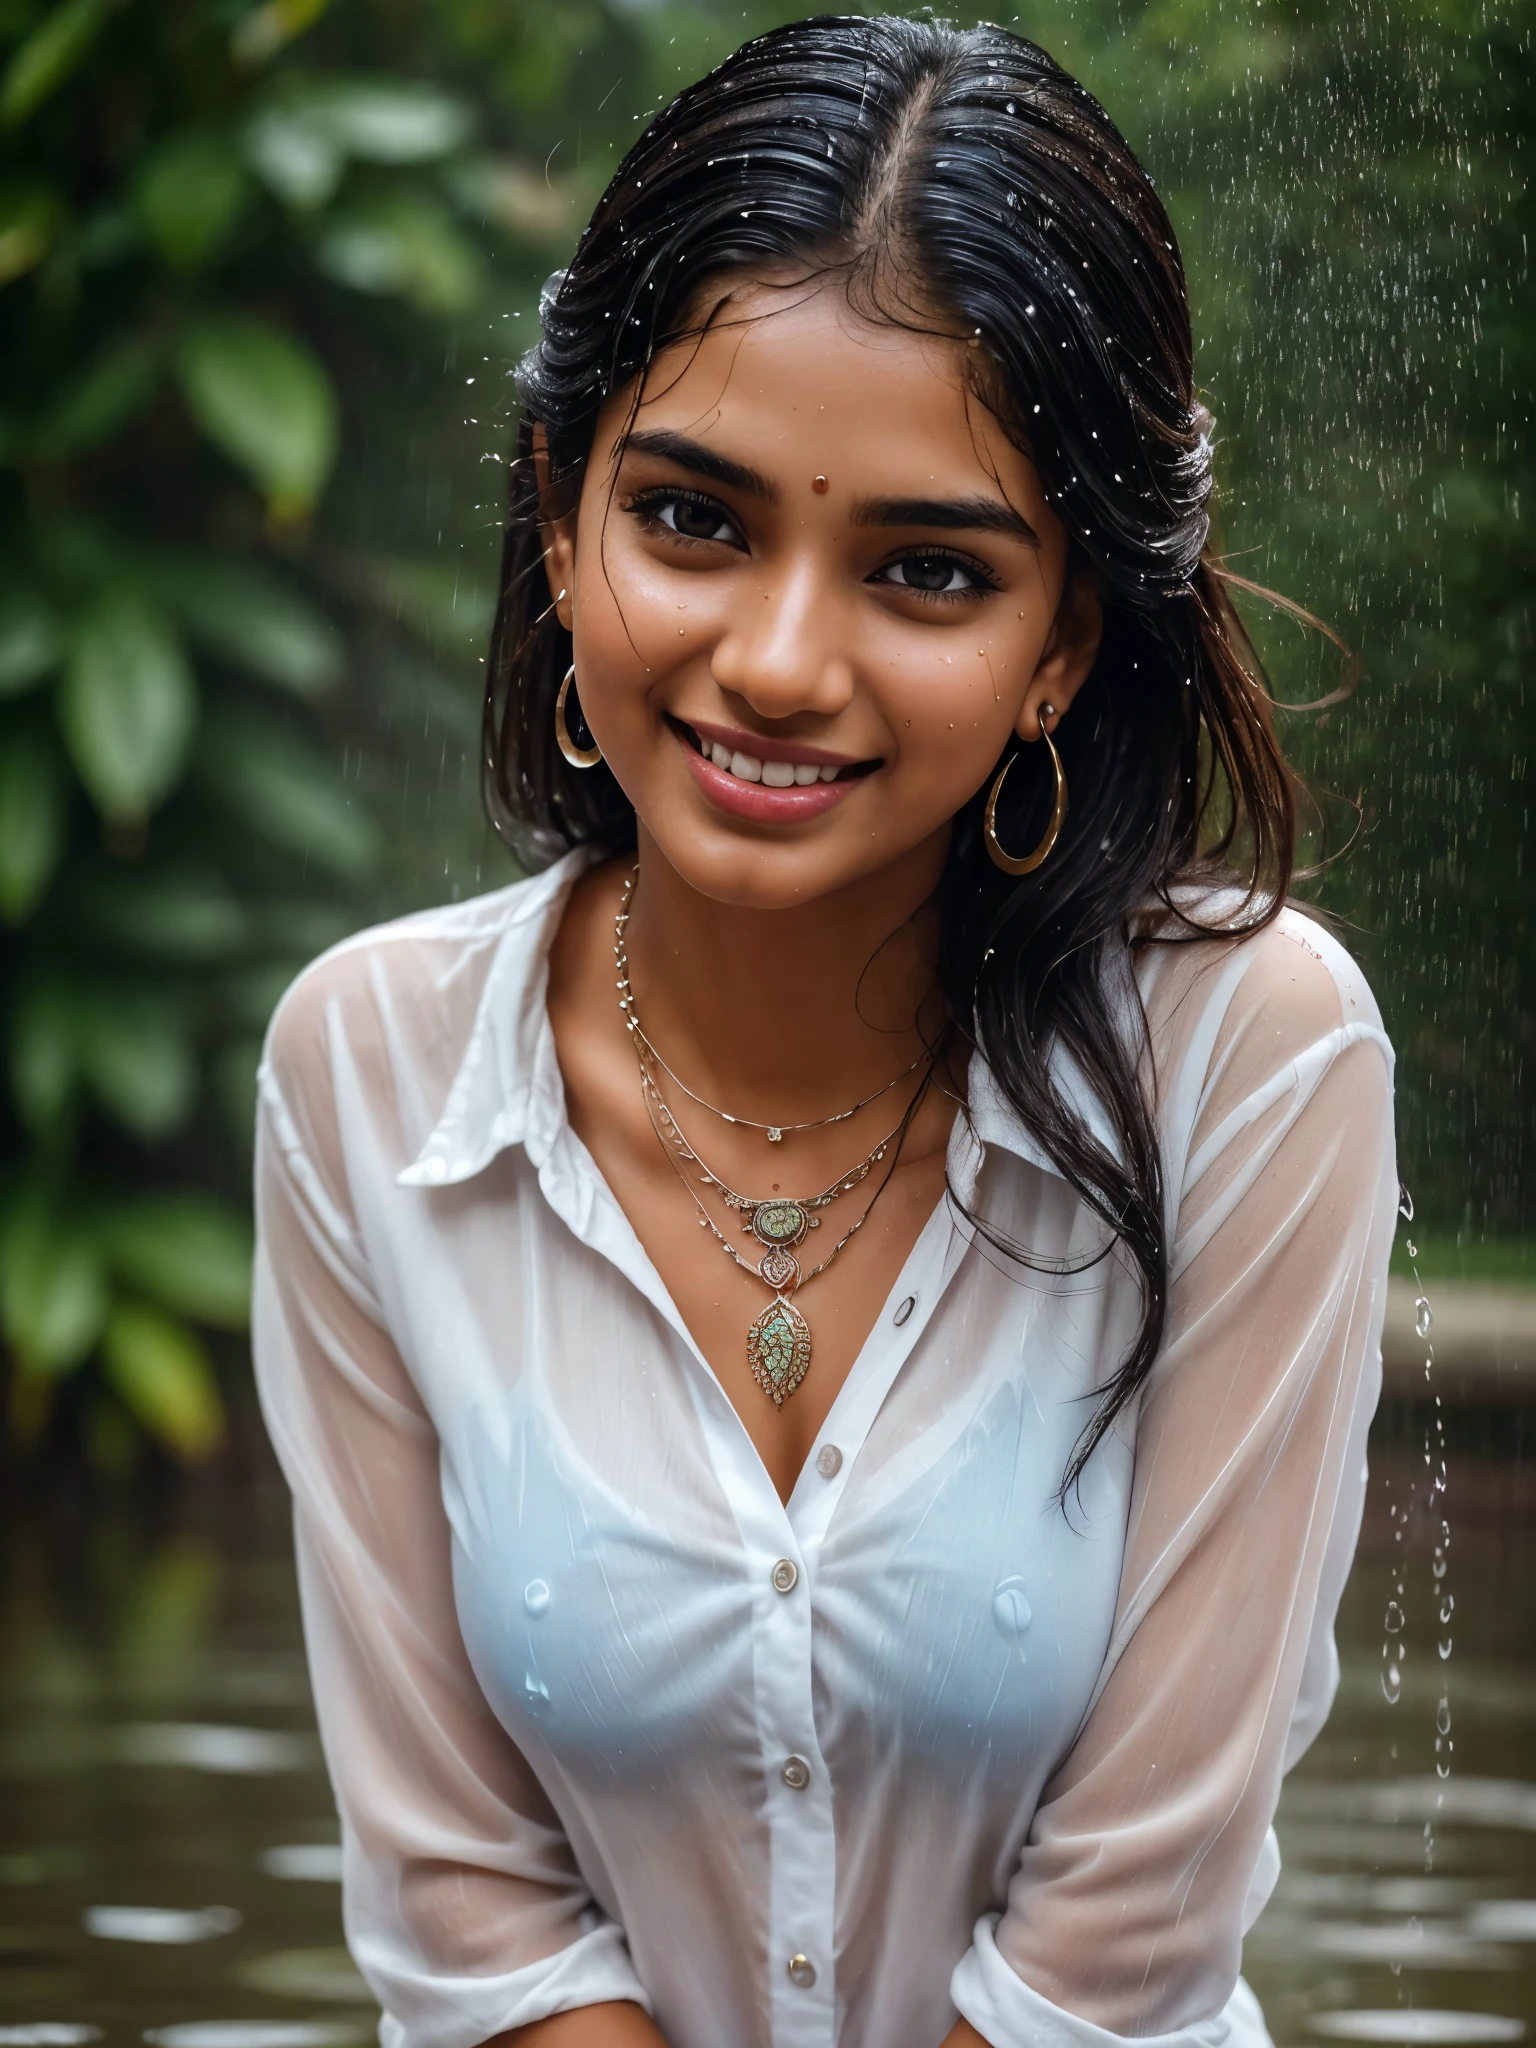 20 yOhren old extremely beautiful brown Tamil girl (weißes Hemd blaue Jeans), (Armreifen Ohrringe Halskette Armbanduhr), im Regen genießen, vom Regen durchnässt, Blick auf den Betrachter vor der Kamera, Augen symmetry, Gesichtssymmetrie, (beste Qualität, ultra-detailliert:1.6), Farbenfrohe Szene, Helle Farbpalette, spielerische Atmosphäre, leuchtende Farben, süße Ausdrücke, freudiges Lachen, Regentropfenreflexionen, nasse Haare, Nasse Kleidung, nasser Körper, Körper, der Licht reflektiert, Von hinten beleuchtet, erfrischendes Ambiente, glückliches Gesicht, spritzendes Wasser, Regentropfen fielen um sie herum, natürliche Beleuchtung, spontane Momente festgehalten, lebhafte Stimmung, in der Ferne stehen, (aufwendige Details:1.6 Gesichter & Augen & Ohren & Nase & Lippen & Haut & 5 Finger & Kurven & Körperteile)